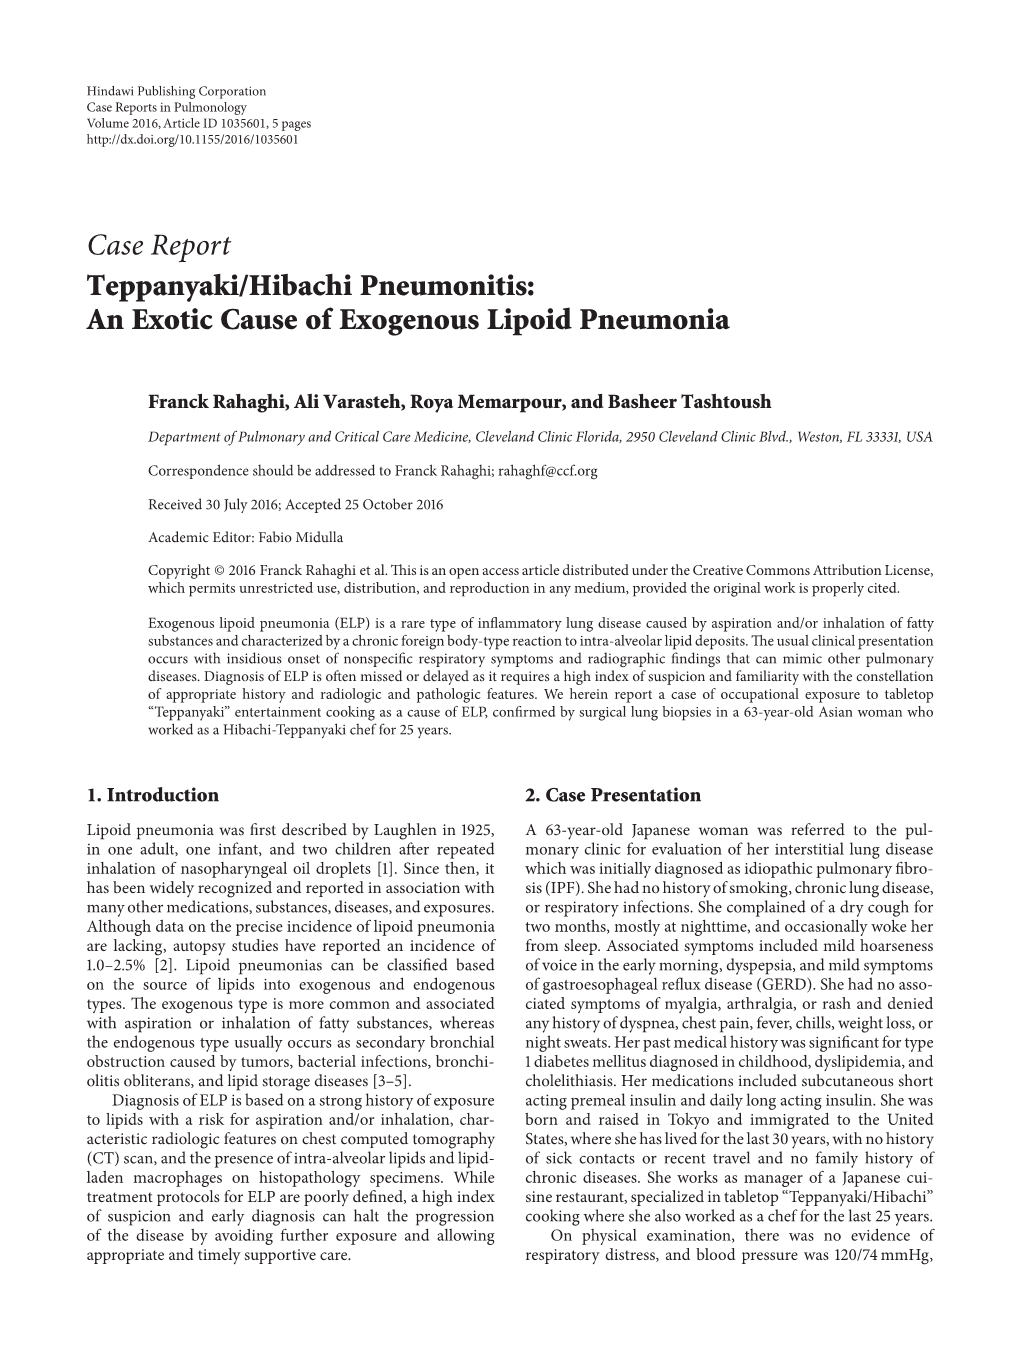 Teppanyaki/Hibachi Pneumonitis: an Exotic Cause of Exogenous Lipoid Pneumonia